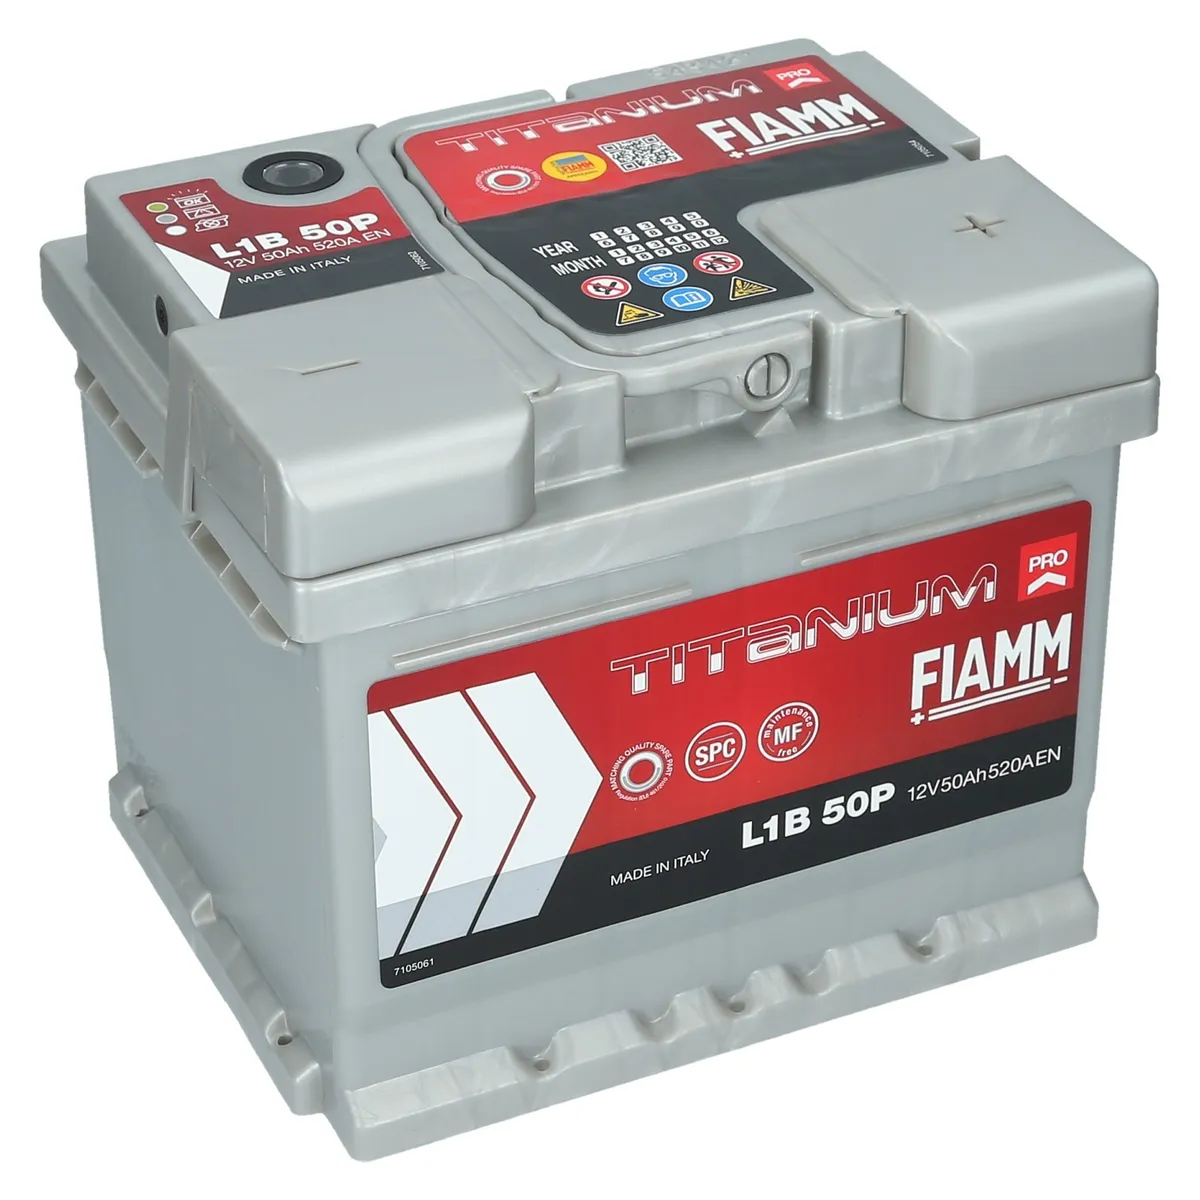 Autobatterie 12V 50Ah 520A EN FIAMM PRO Premium Batterie ersetzt 40 44 45  46 Ah